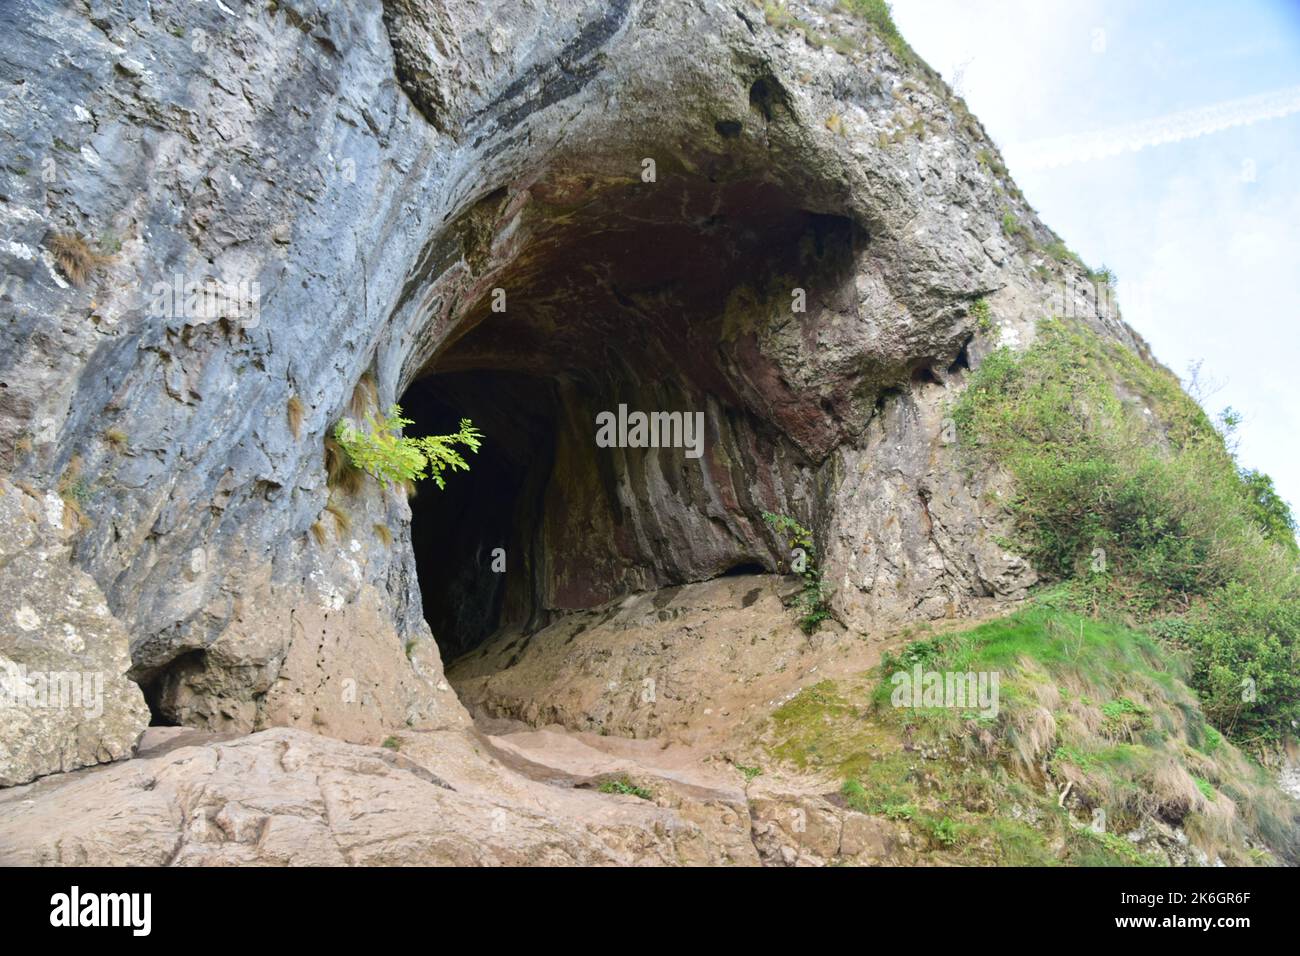 Face à la vallée de la manifold du district de pic sont une série de grottes formées il y a environ 300 millions d'années, la grotte de Thor étant la plus grande. Banque D'Images